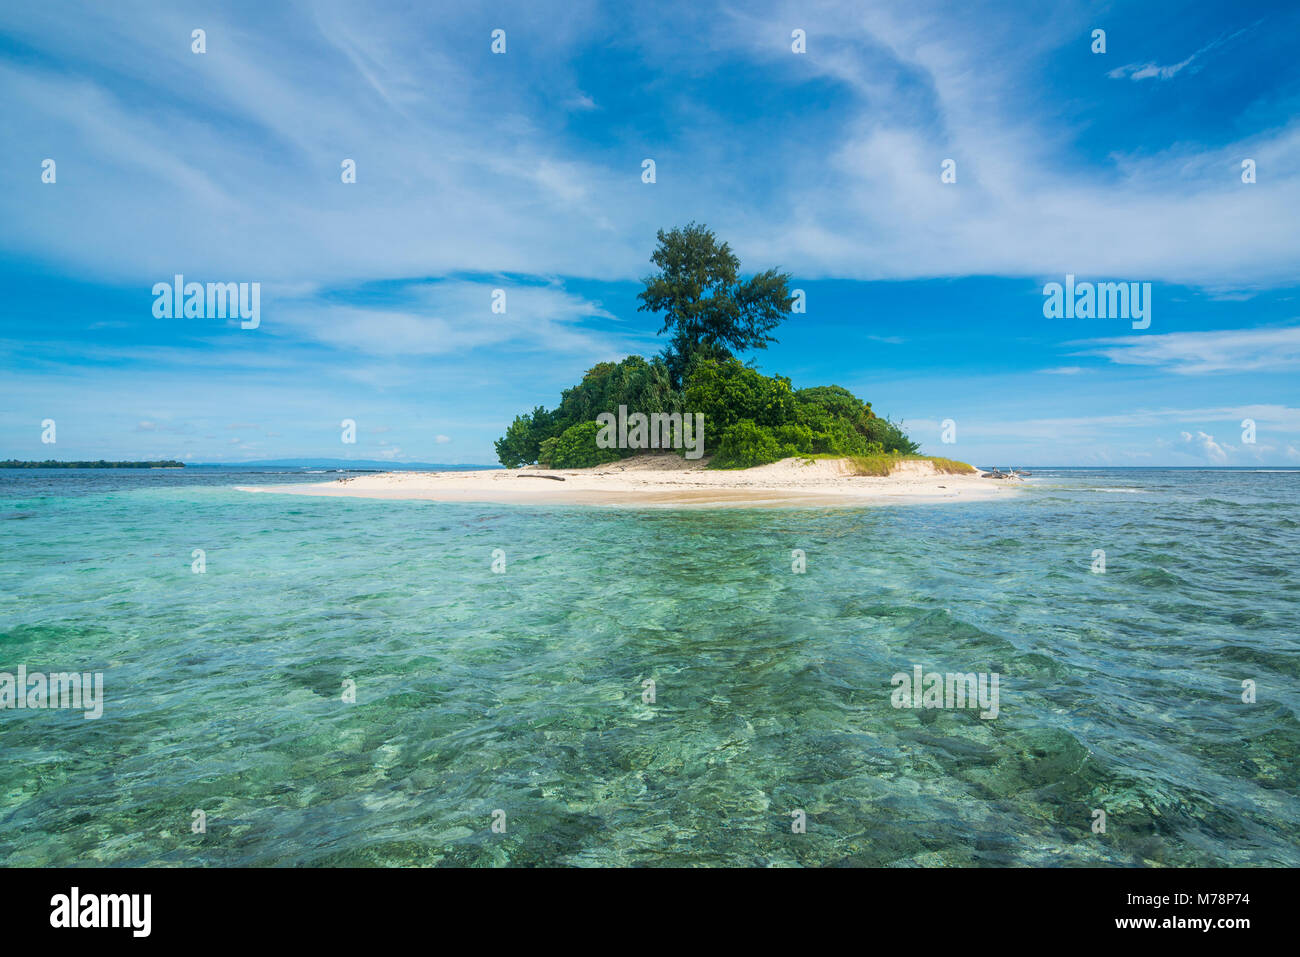 L'eau turquoise et plage de sable blanc de la magnifique petite île de ral au large de la côte de Kavieng, New Ireland, Papouasie Nouvelle Guinée, du Pacifique Banque D'Images